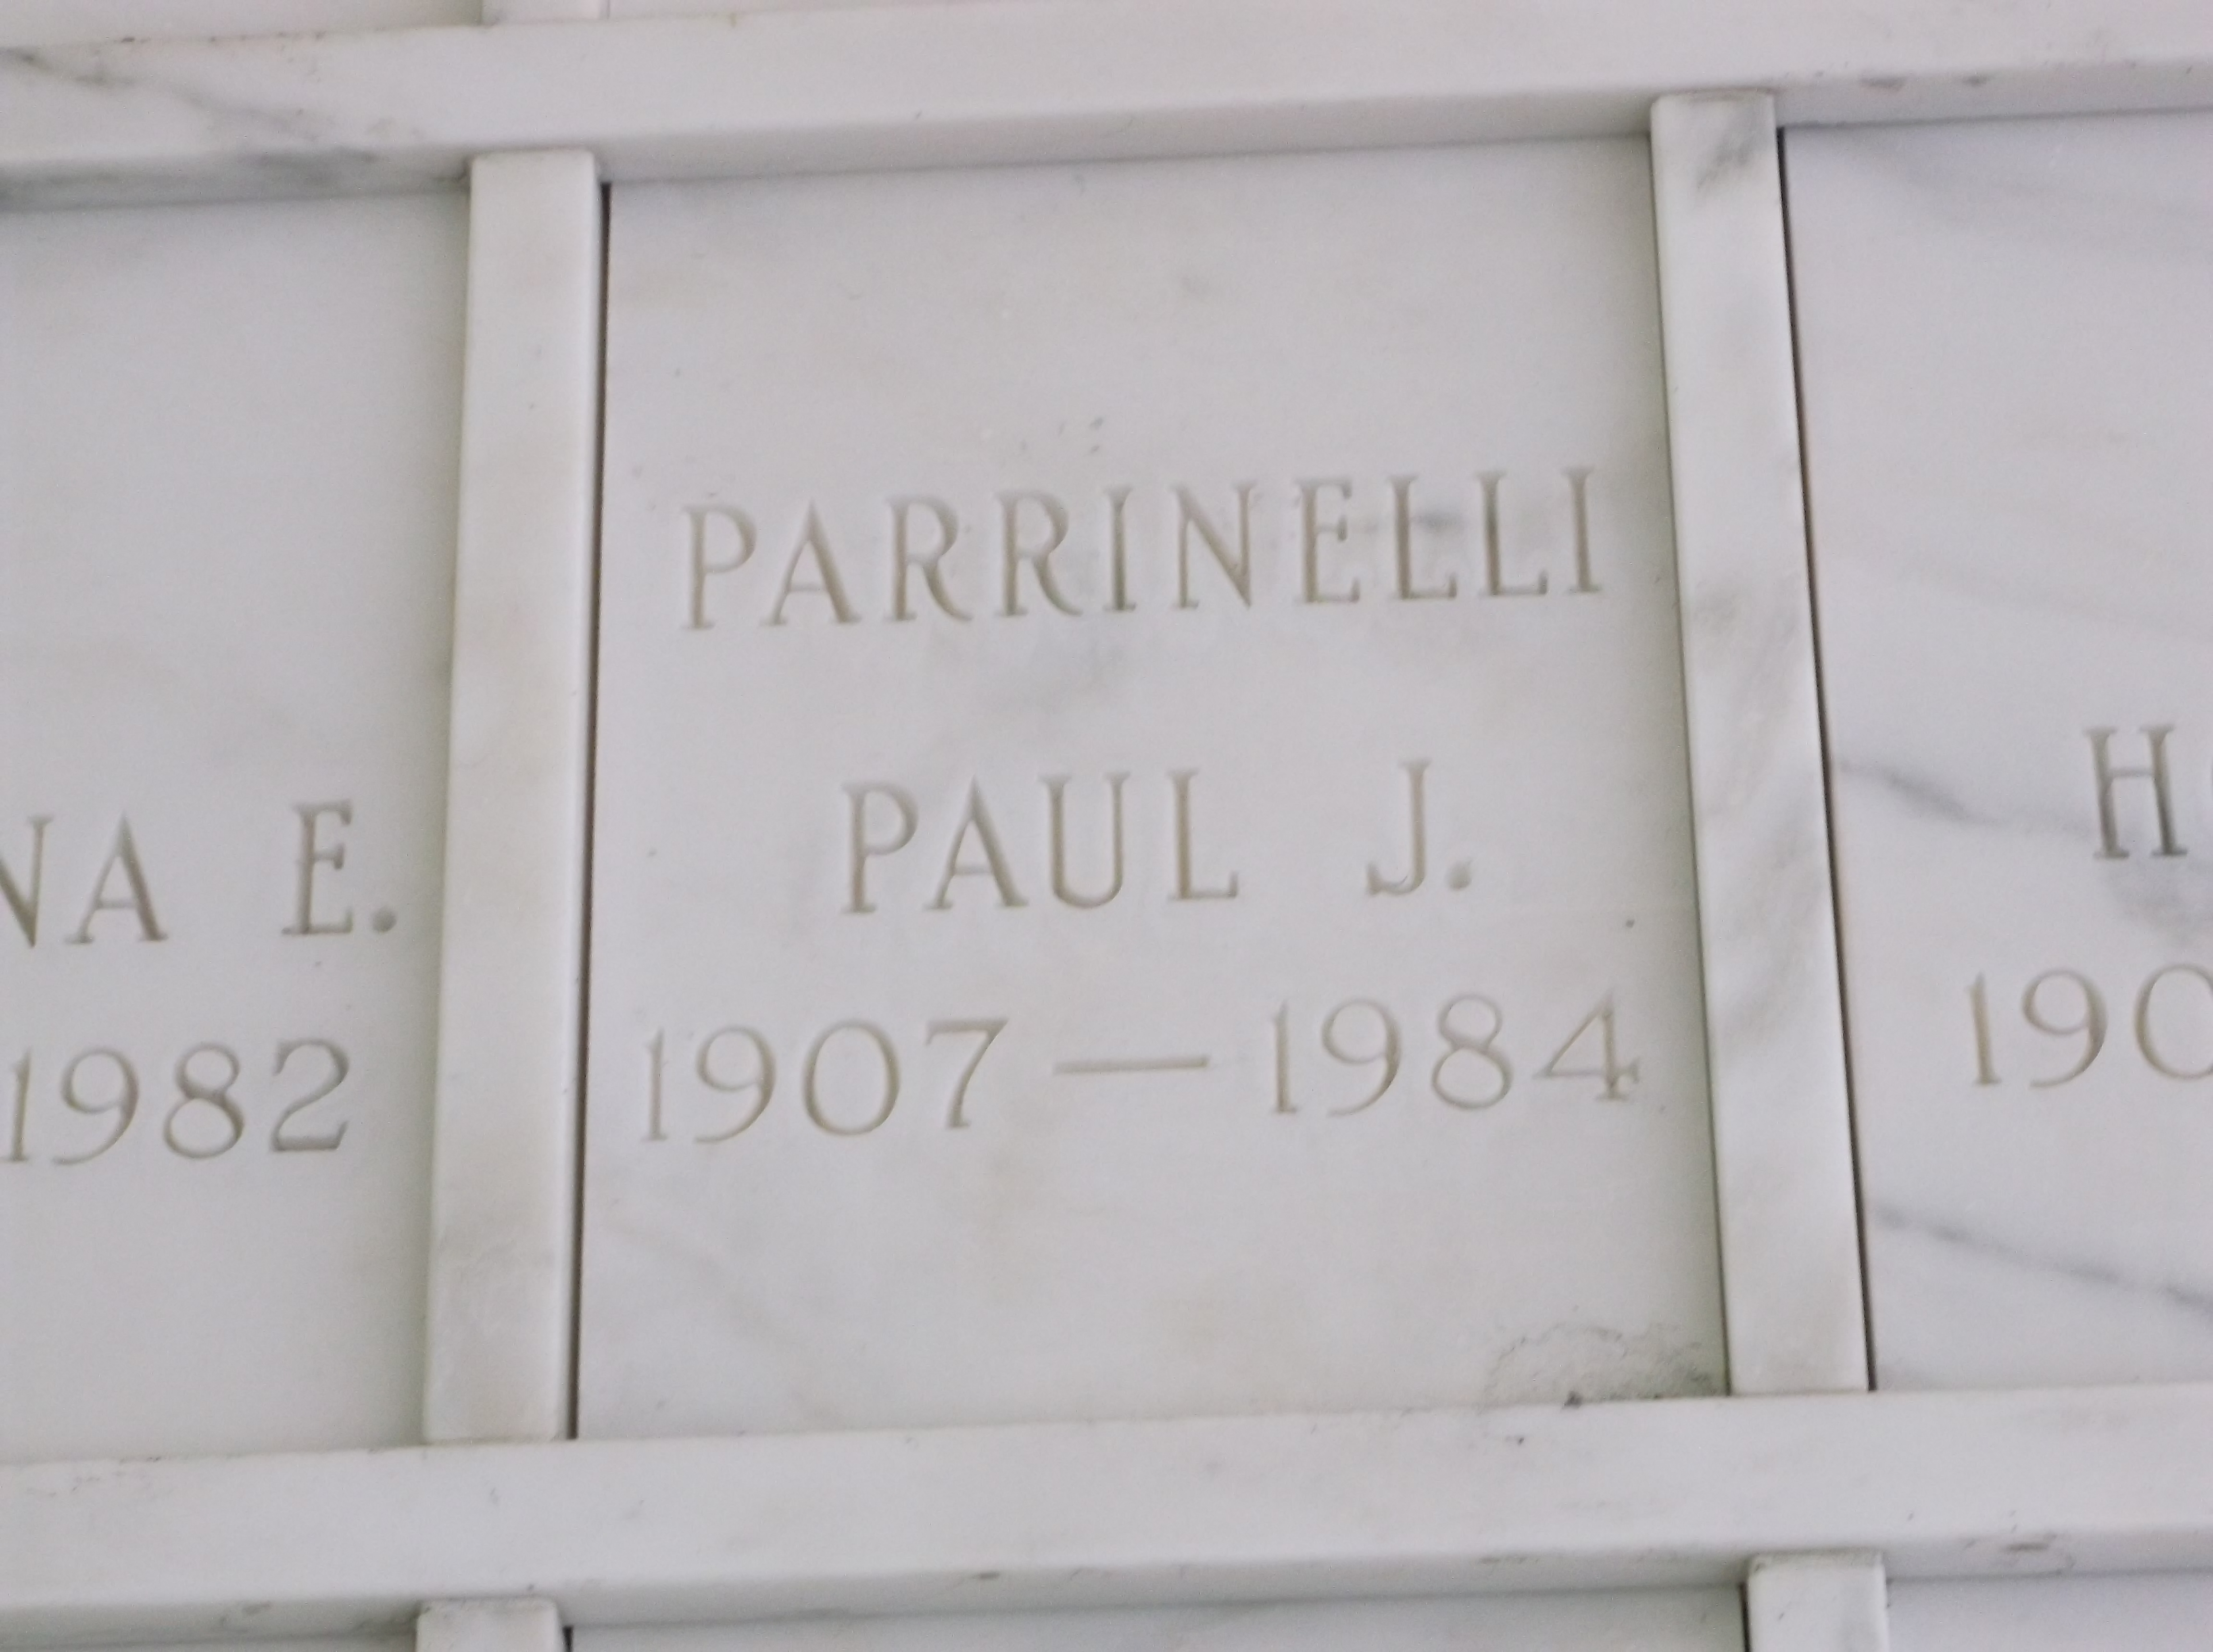 Paul J Parrinelli